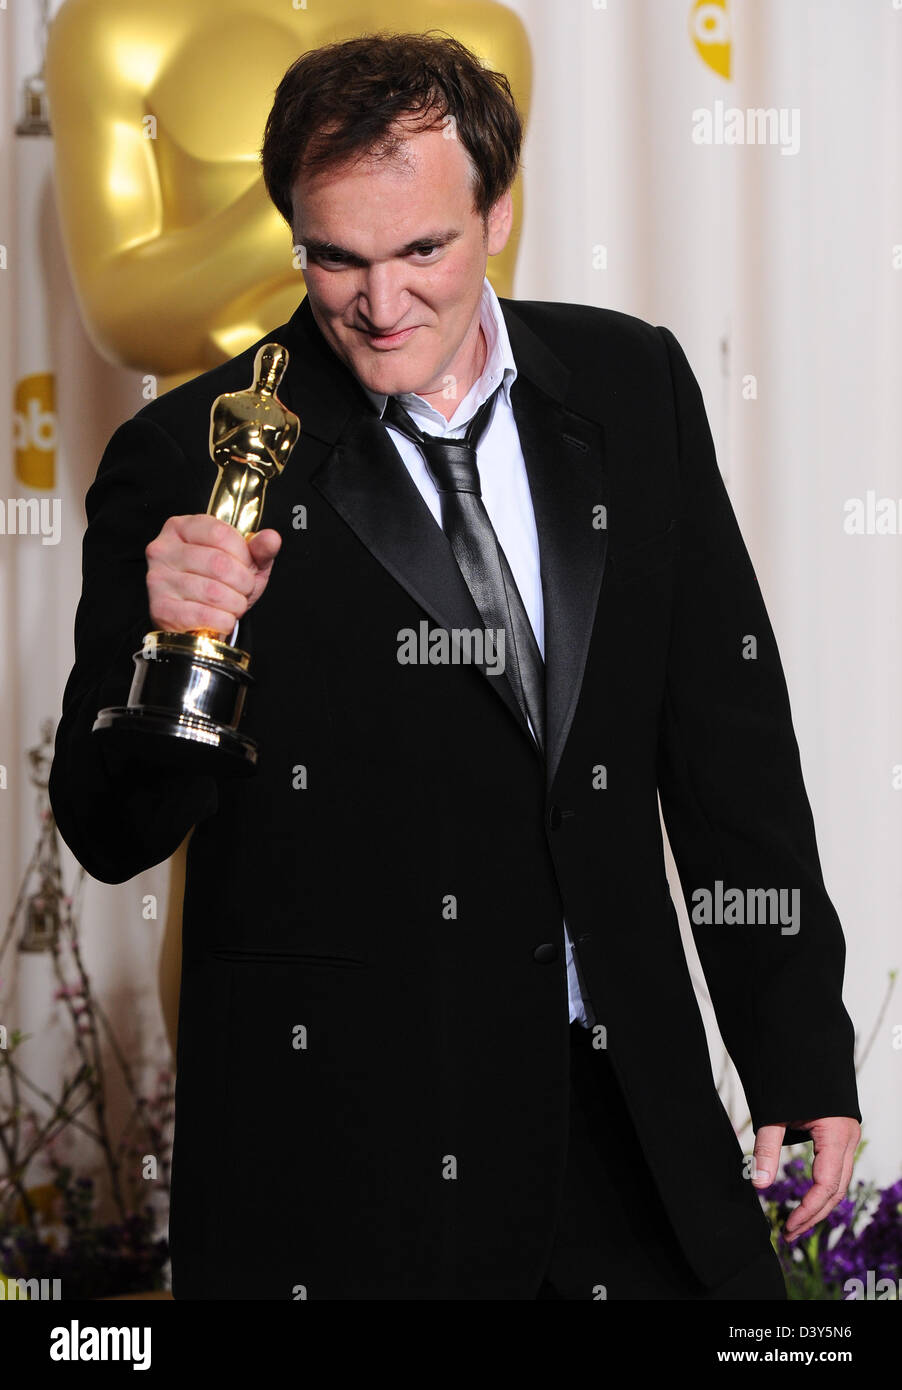 Los Angeles, USA. 24 février 2013. Quentin Tarantino dans la salle de presse les lauréats à la 85e annuelle des Academy Awards Oscars, Los Angeles, l'Amérique - 24 févr. 2013. Credit : Sydney Alford / Alamy Live News Banque D'Images